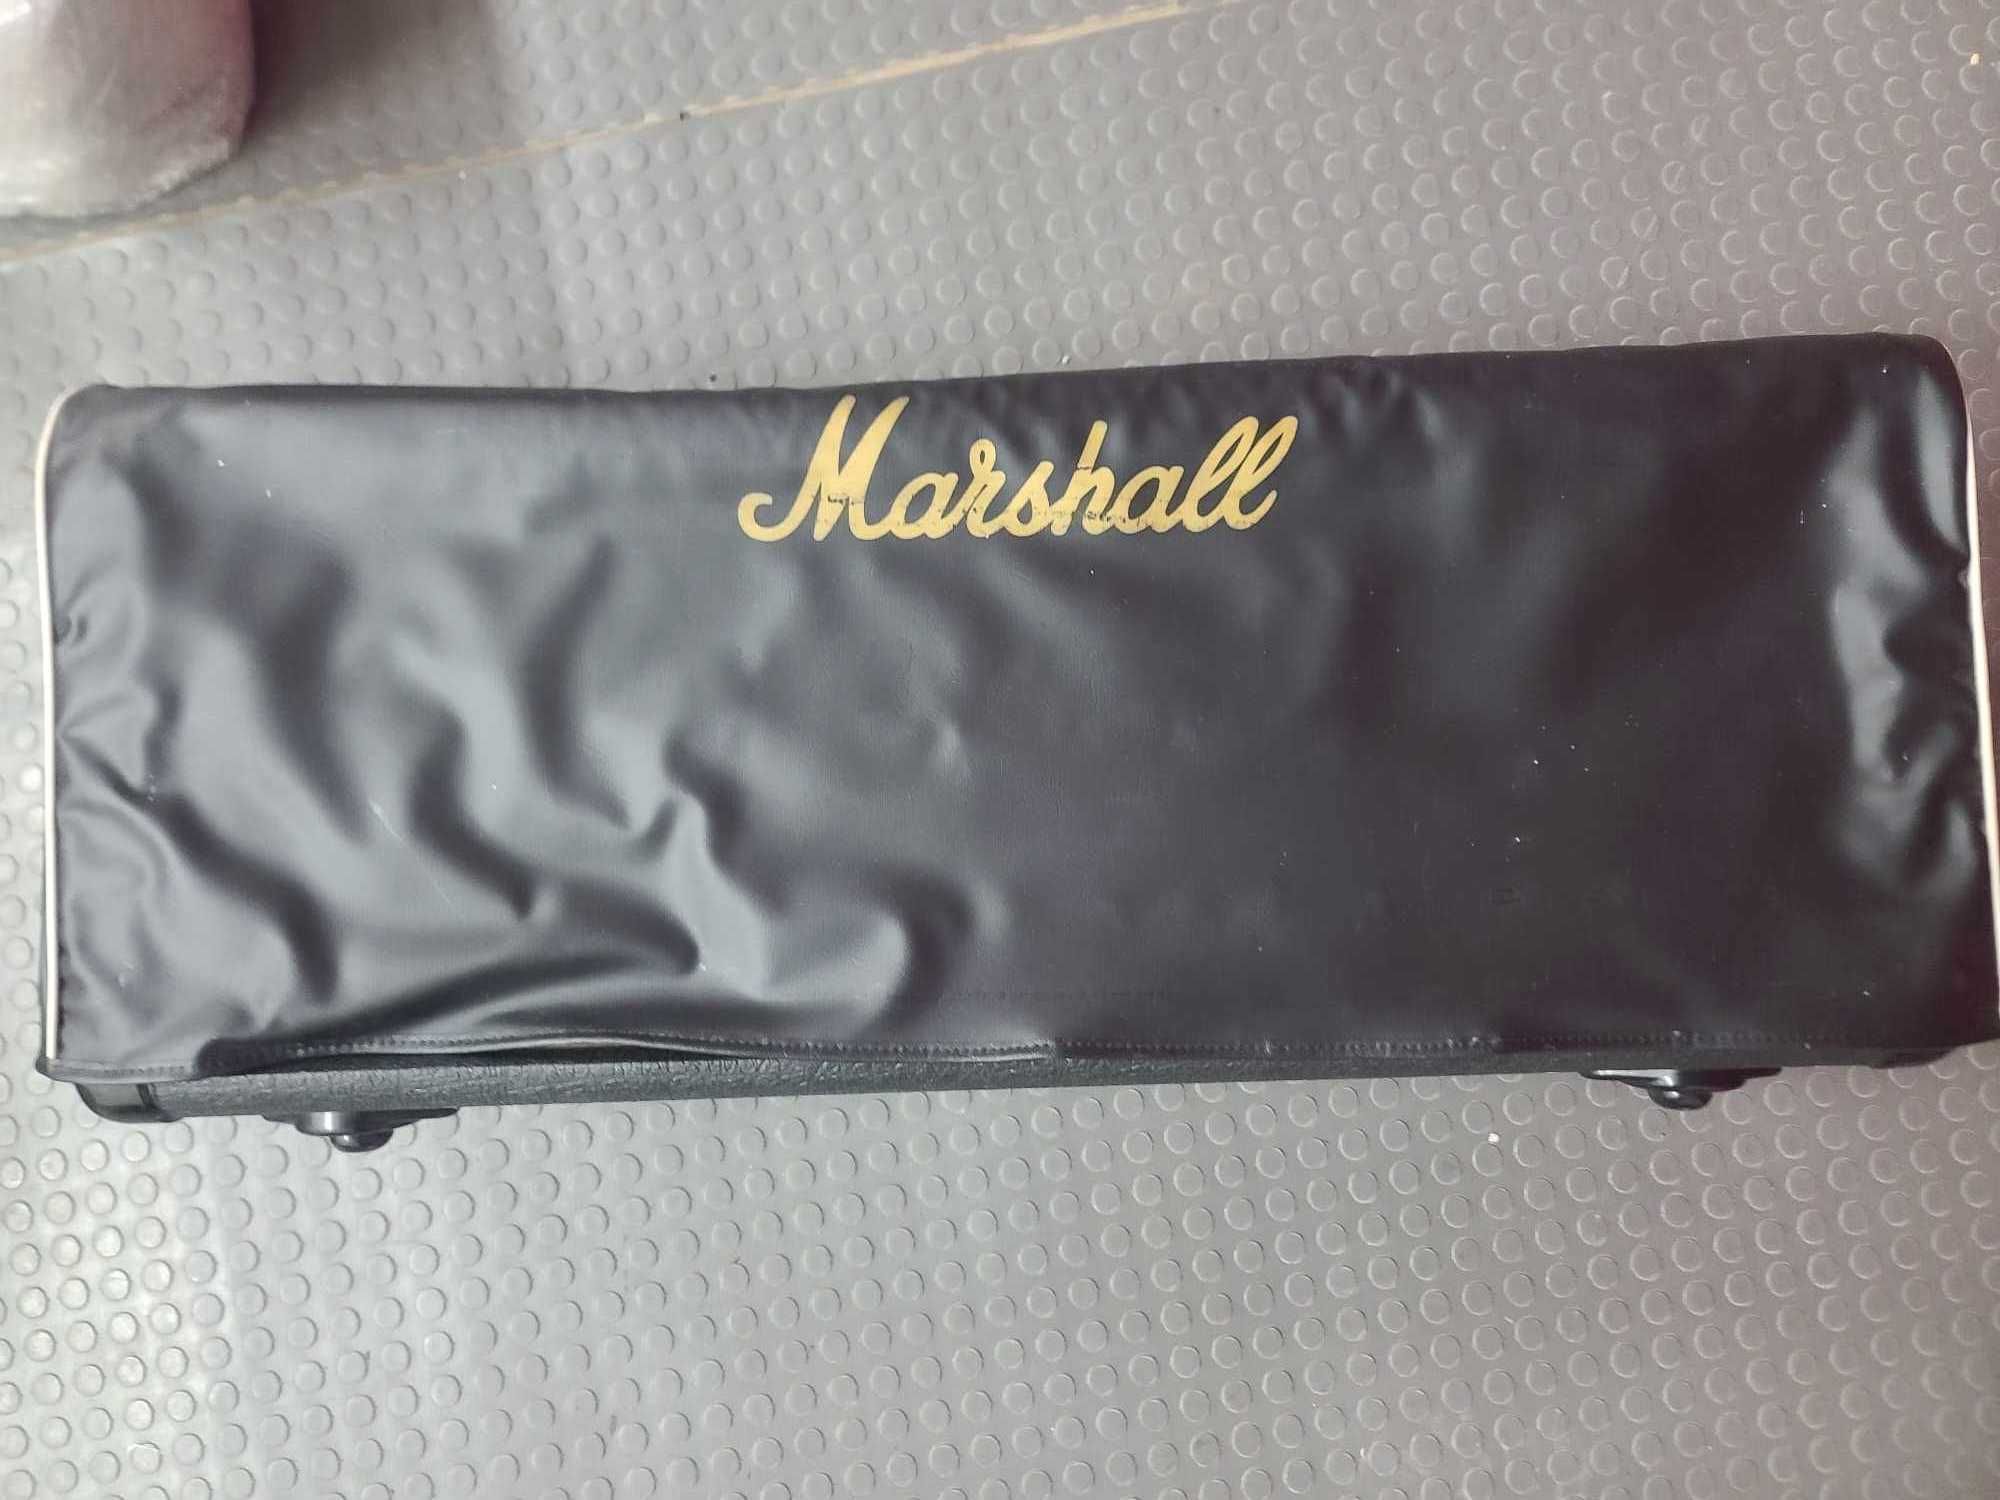 Marshall JCM 2000 DSL 50w лампов китарен усилвател